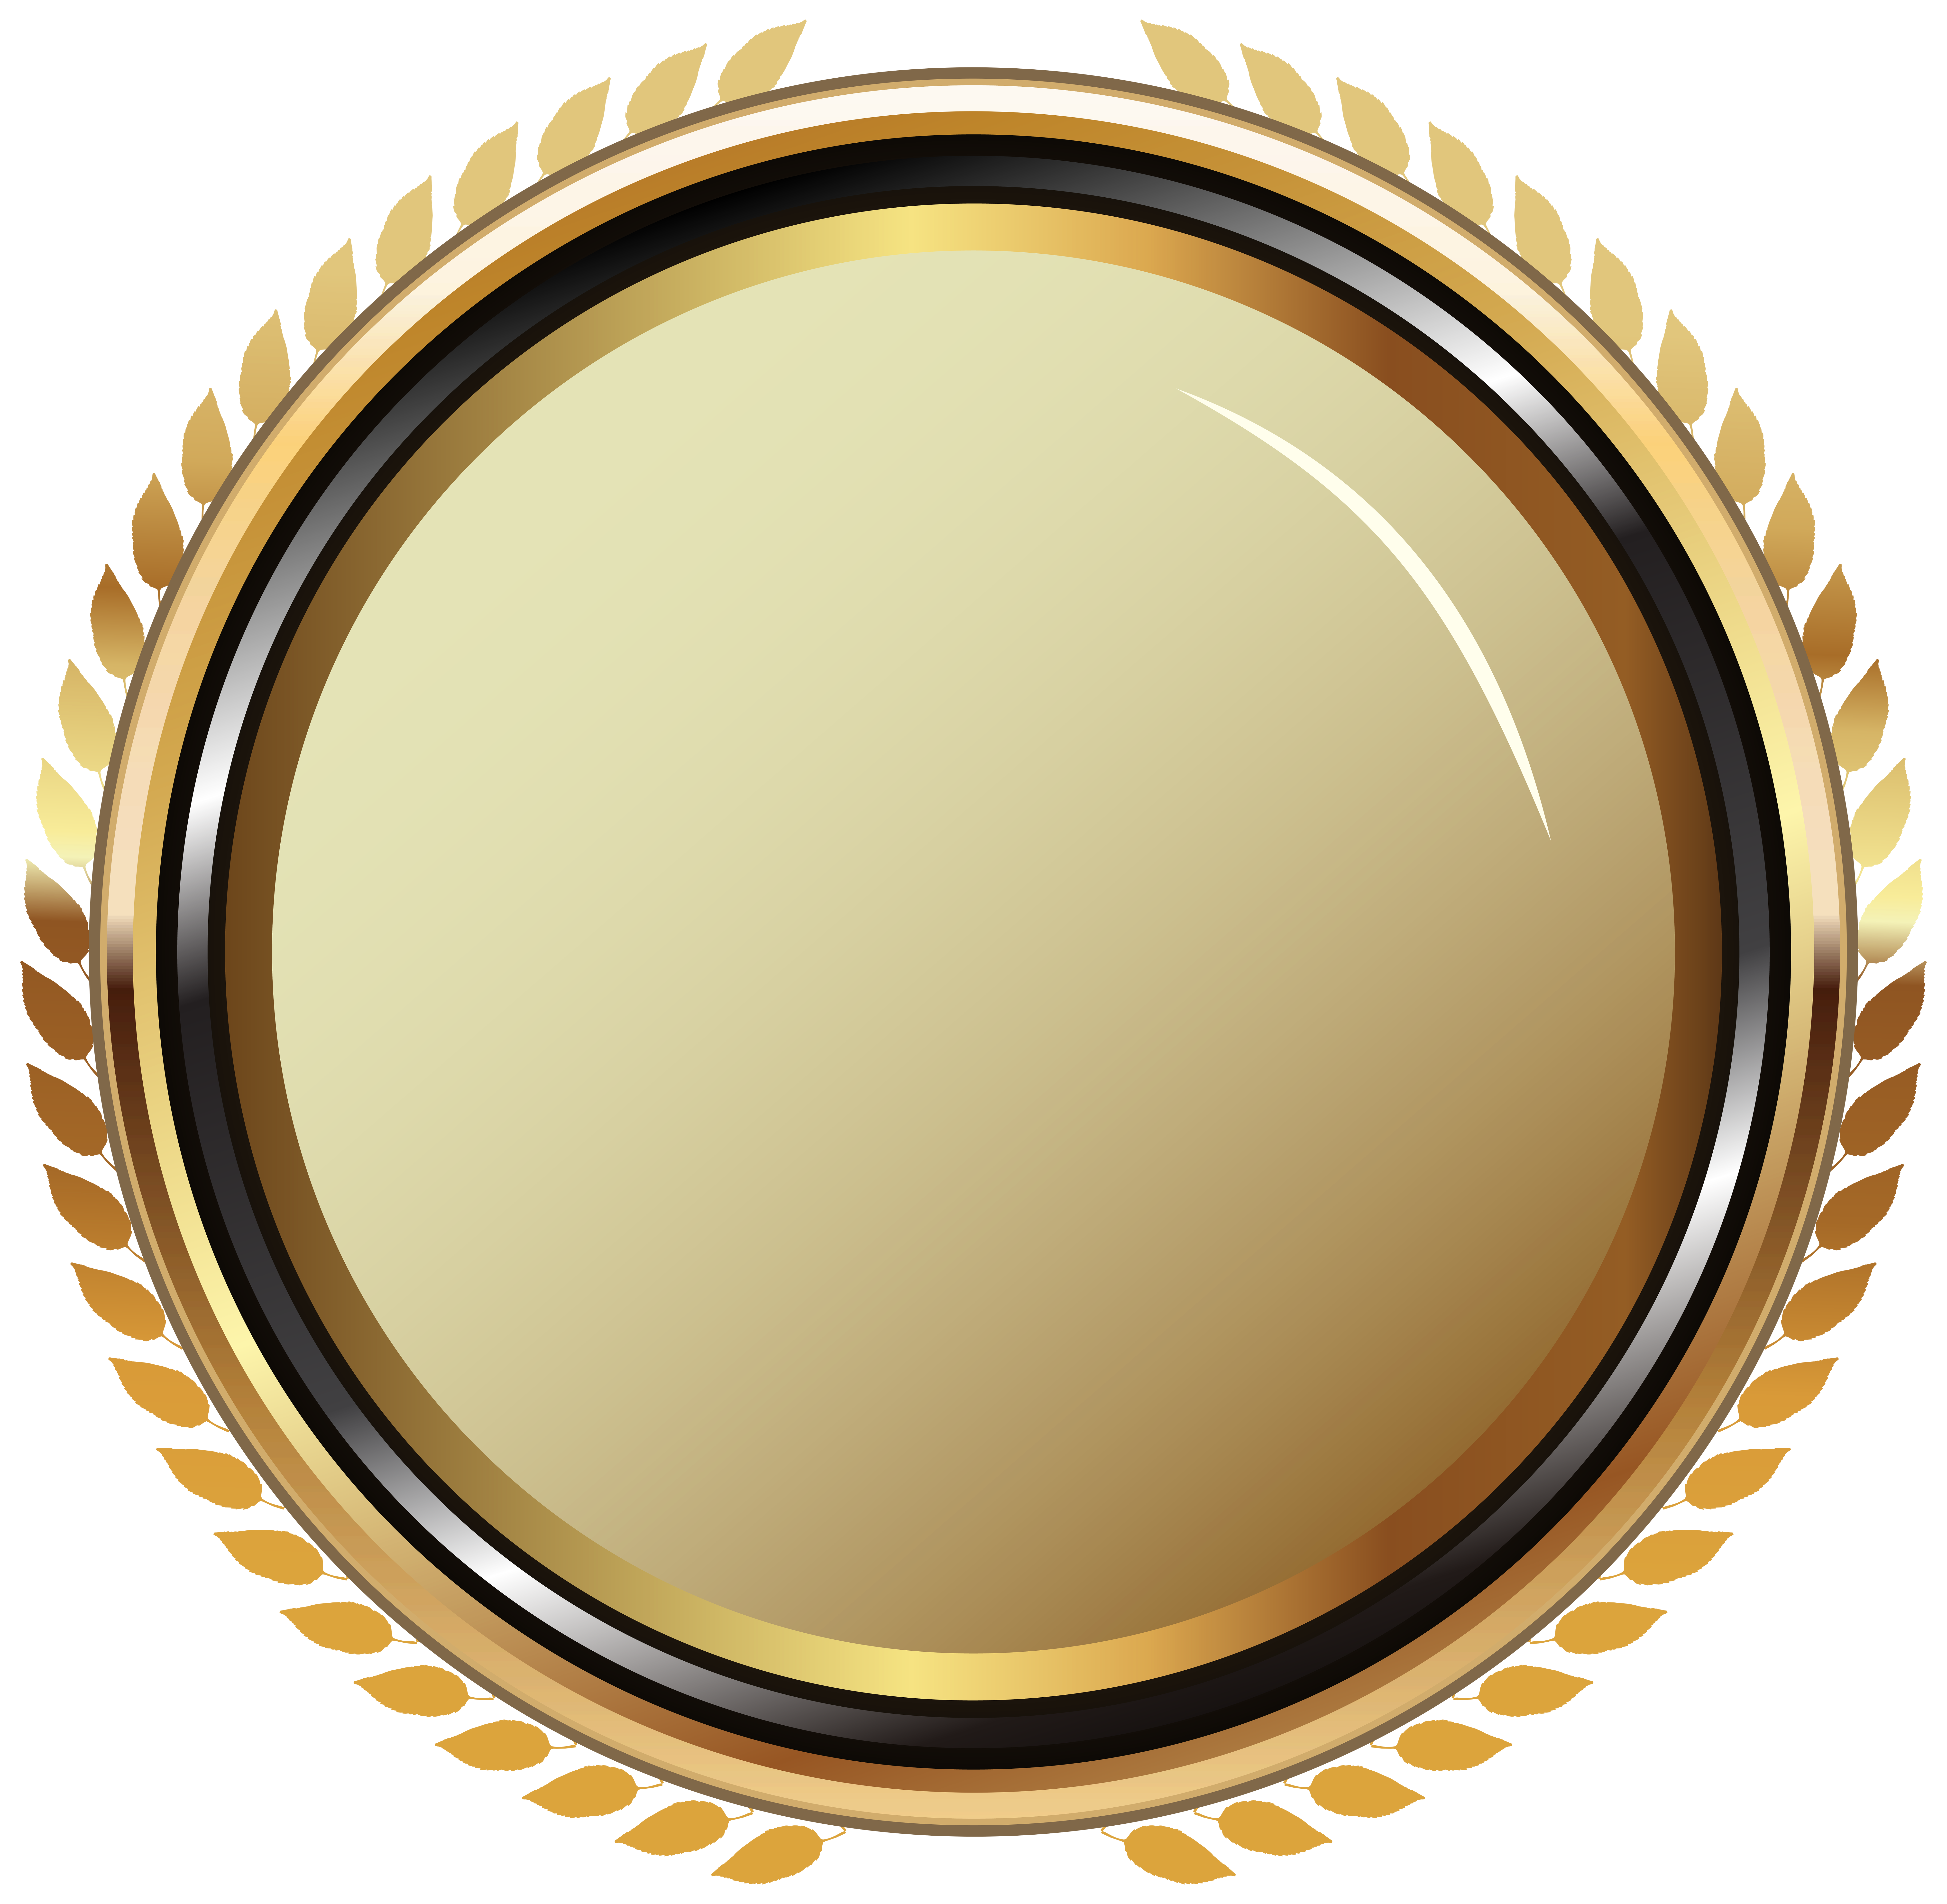 Badge transparent clip art. Gold oval frame png